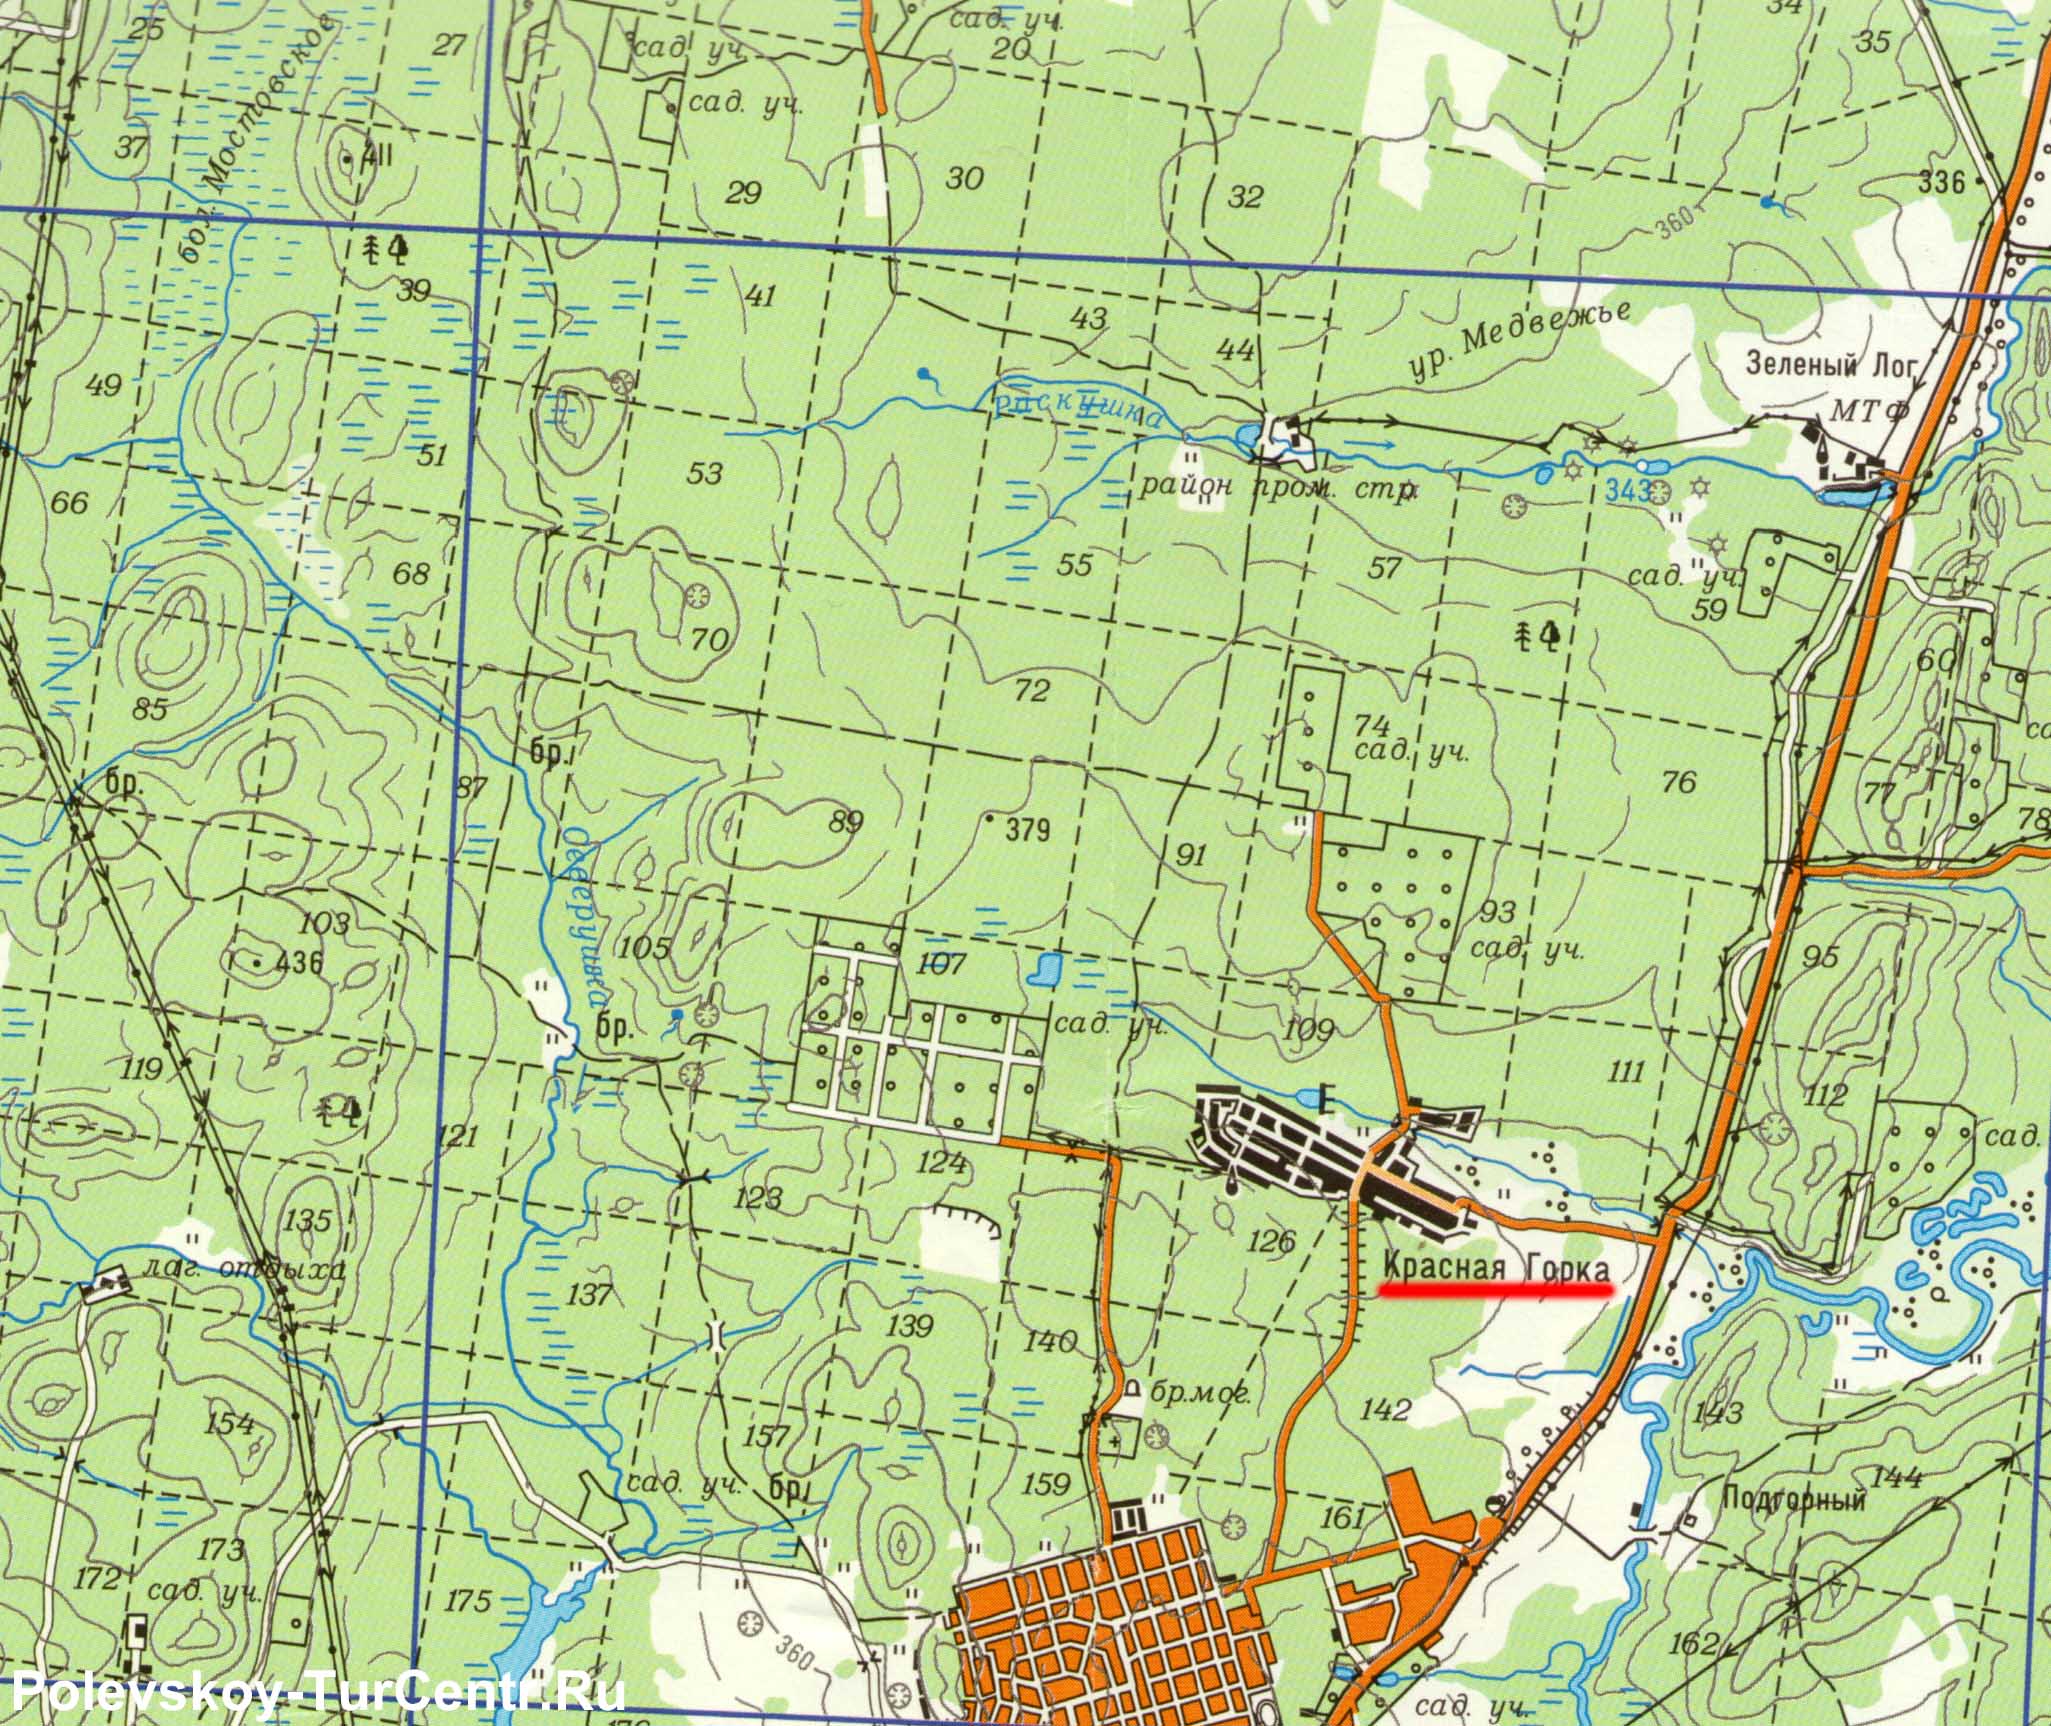 Карта посёлка Красная Горка с окрестностями (2010 г.)